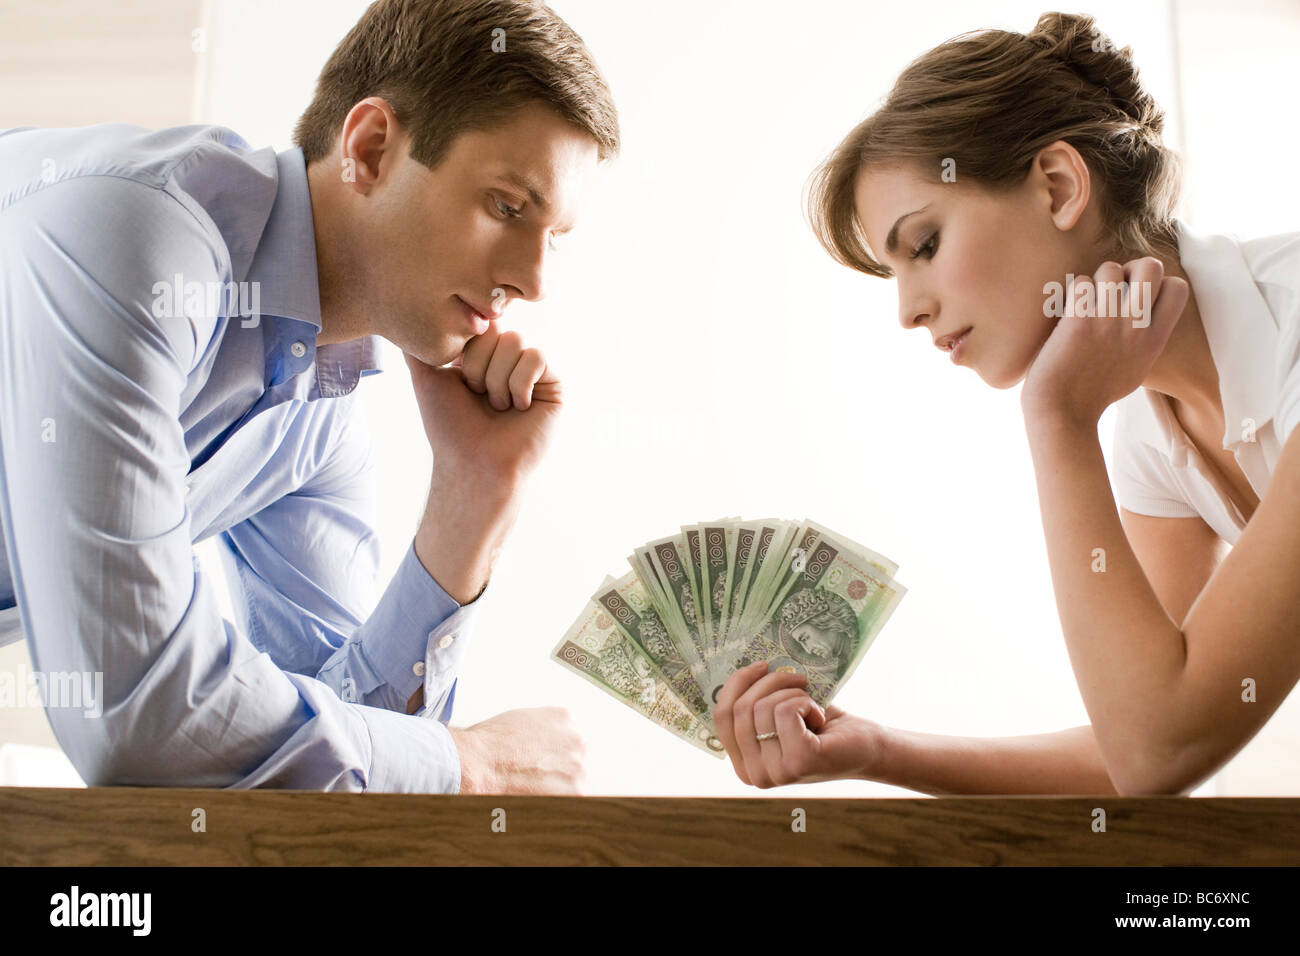 Бедный супруг вместе с женой за долги лижут жопу бизнесмену